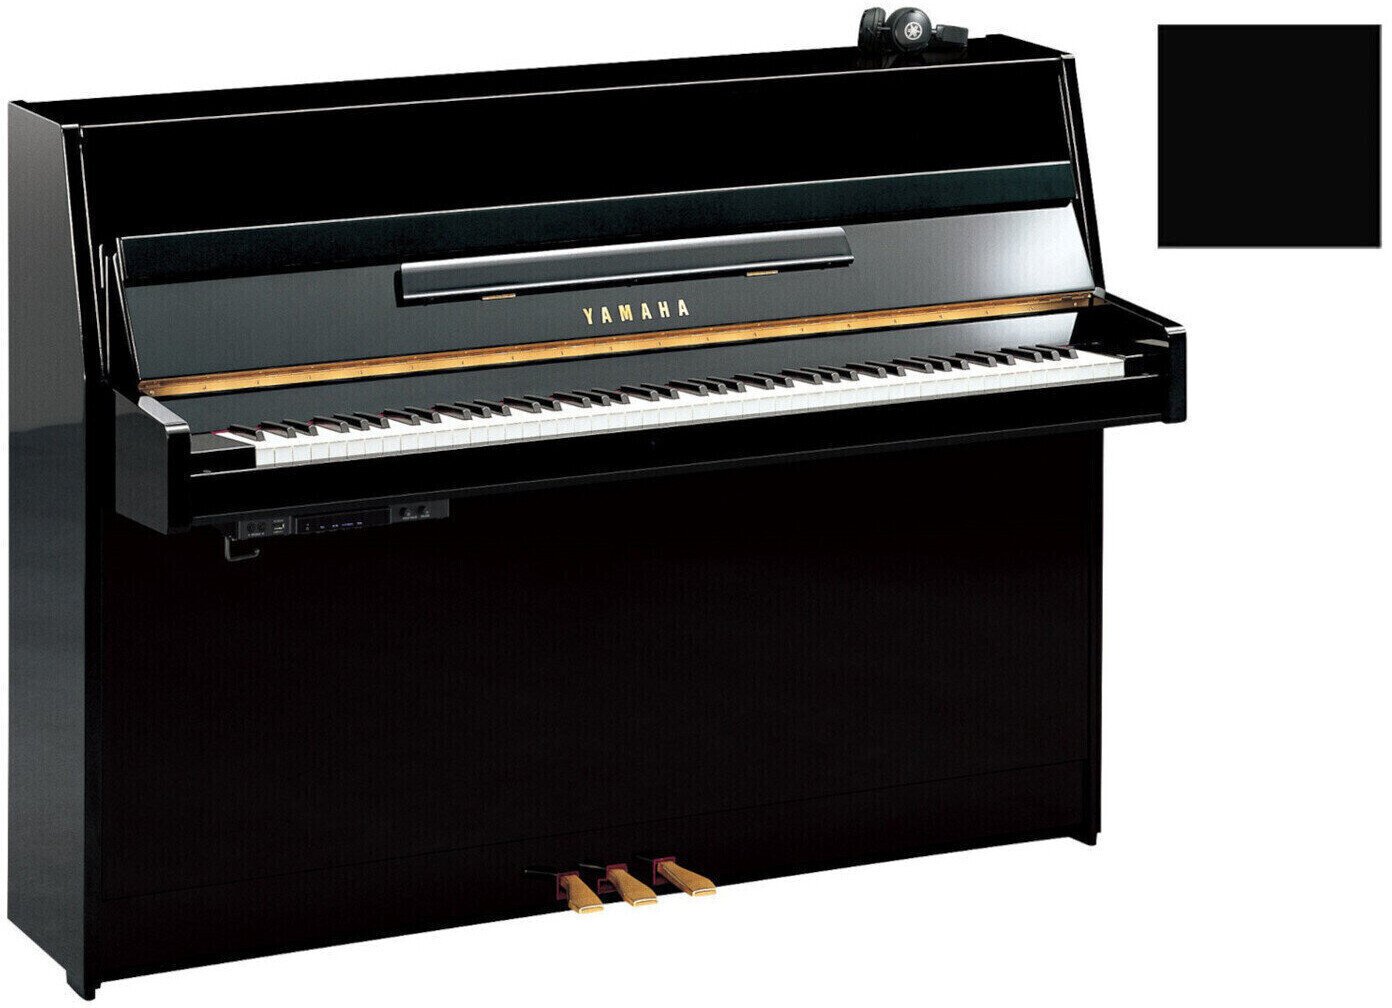 Yamaha B1 SC2 Silent Piano Polished Ebony with Chrome Yamaha